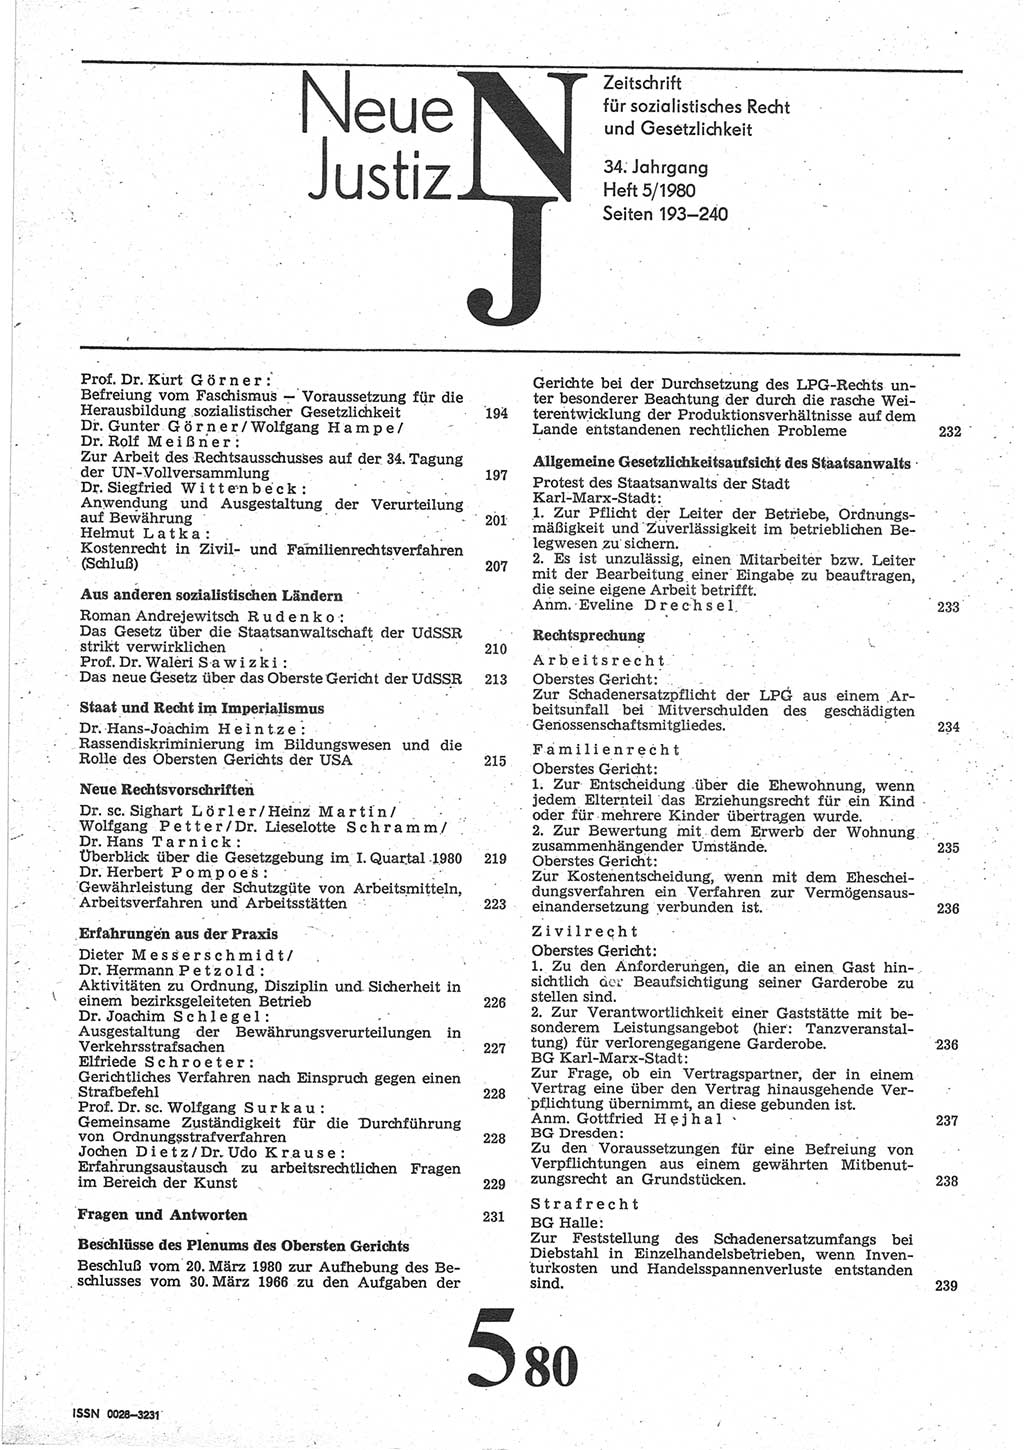 Neue Justiz (NJ), Zeitschrift für sozialistisches Recht und Gesetzlichkeit [Deutsche Demokratische Republik (DDR)], 34. Jahrgang 1980, Seite 193 (NJ DDR 1980, S. 193)